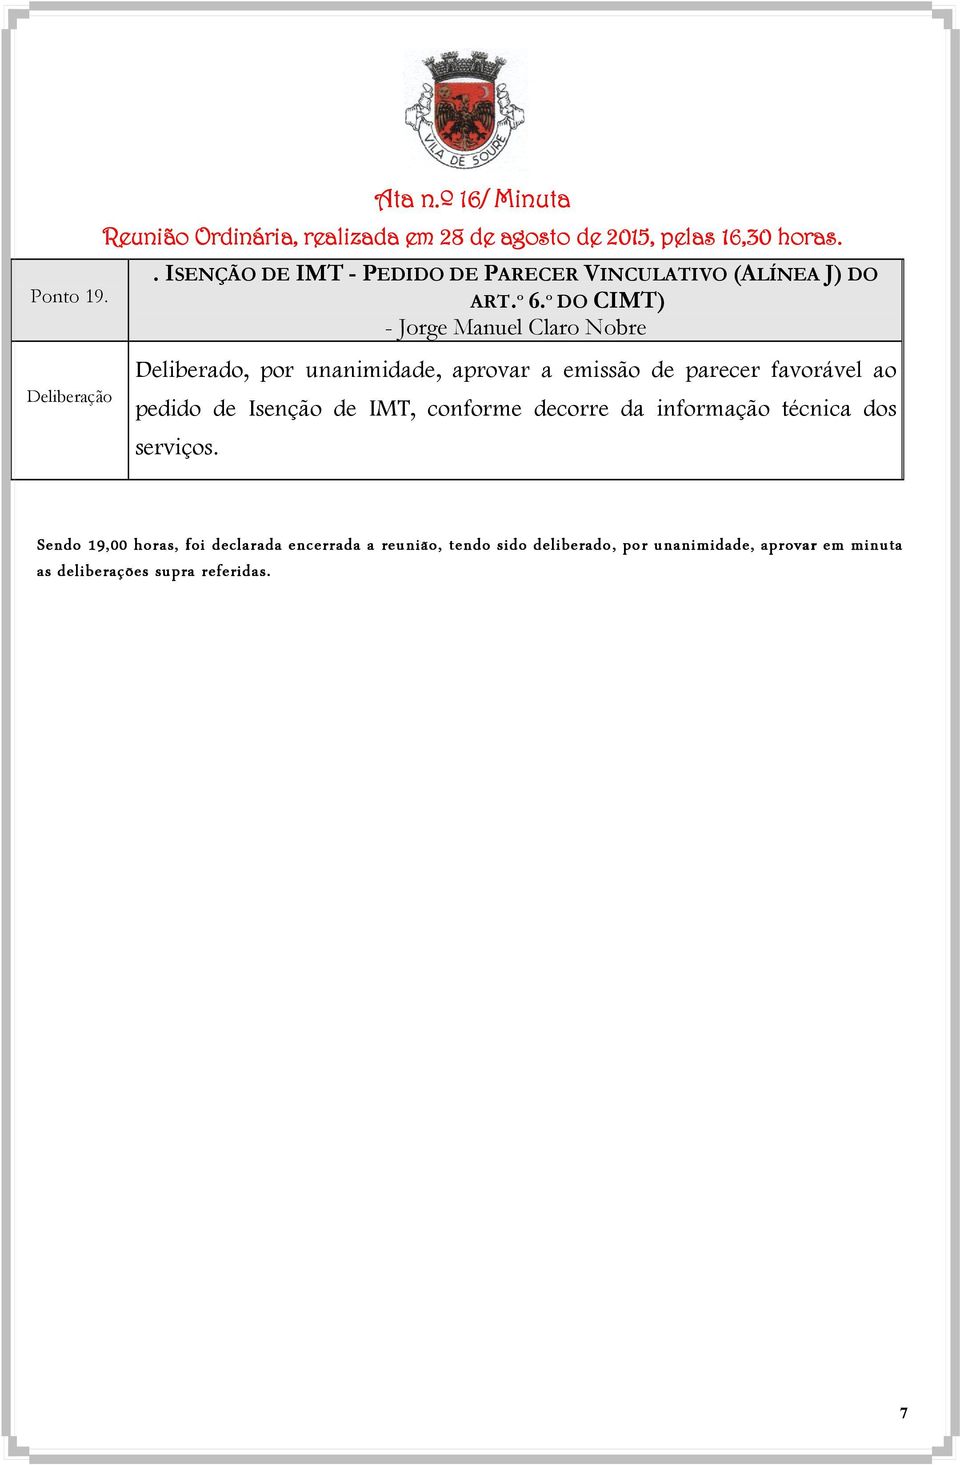 º DO CIMT) - Jorge Manuel Claro Nobre Deliberado, por unanimidade, aprovar a emissão de parecer favorável ao pedido de